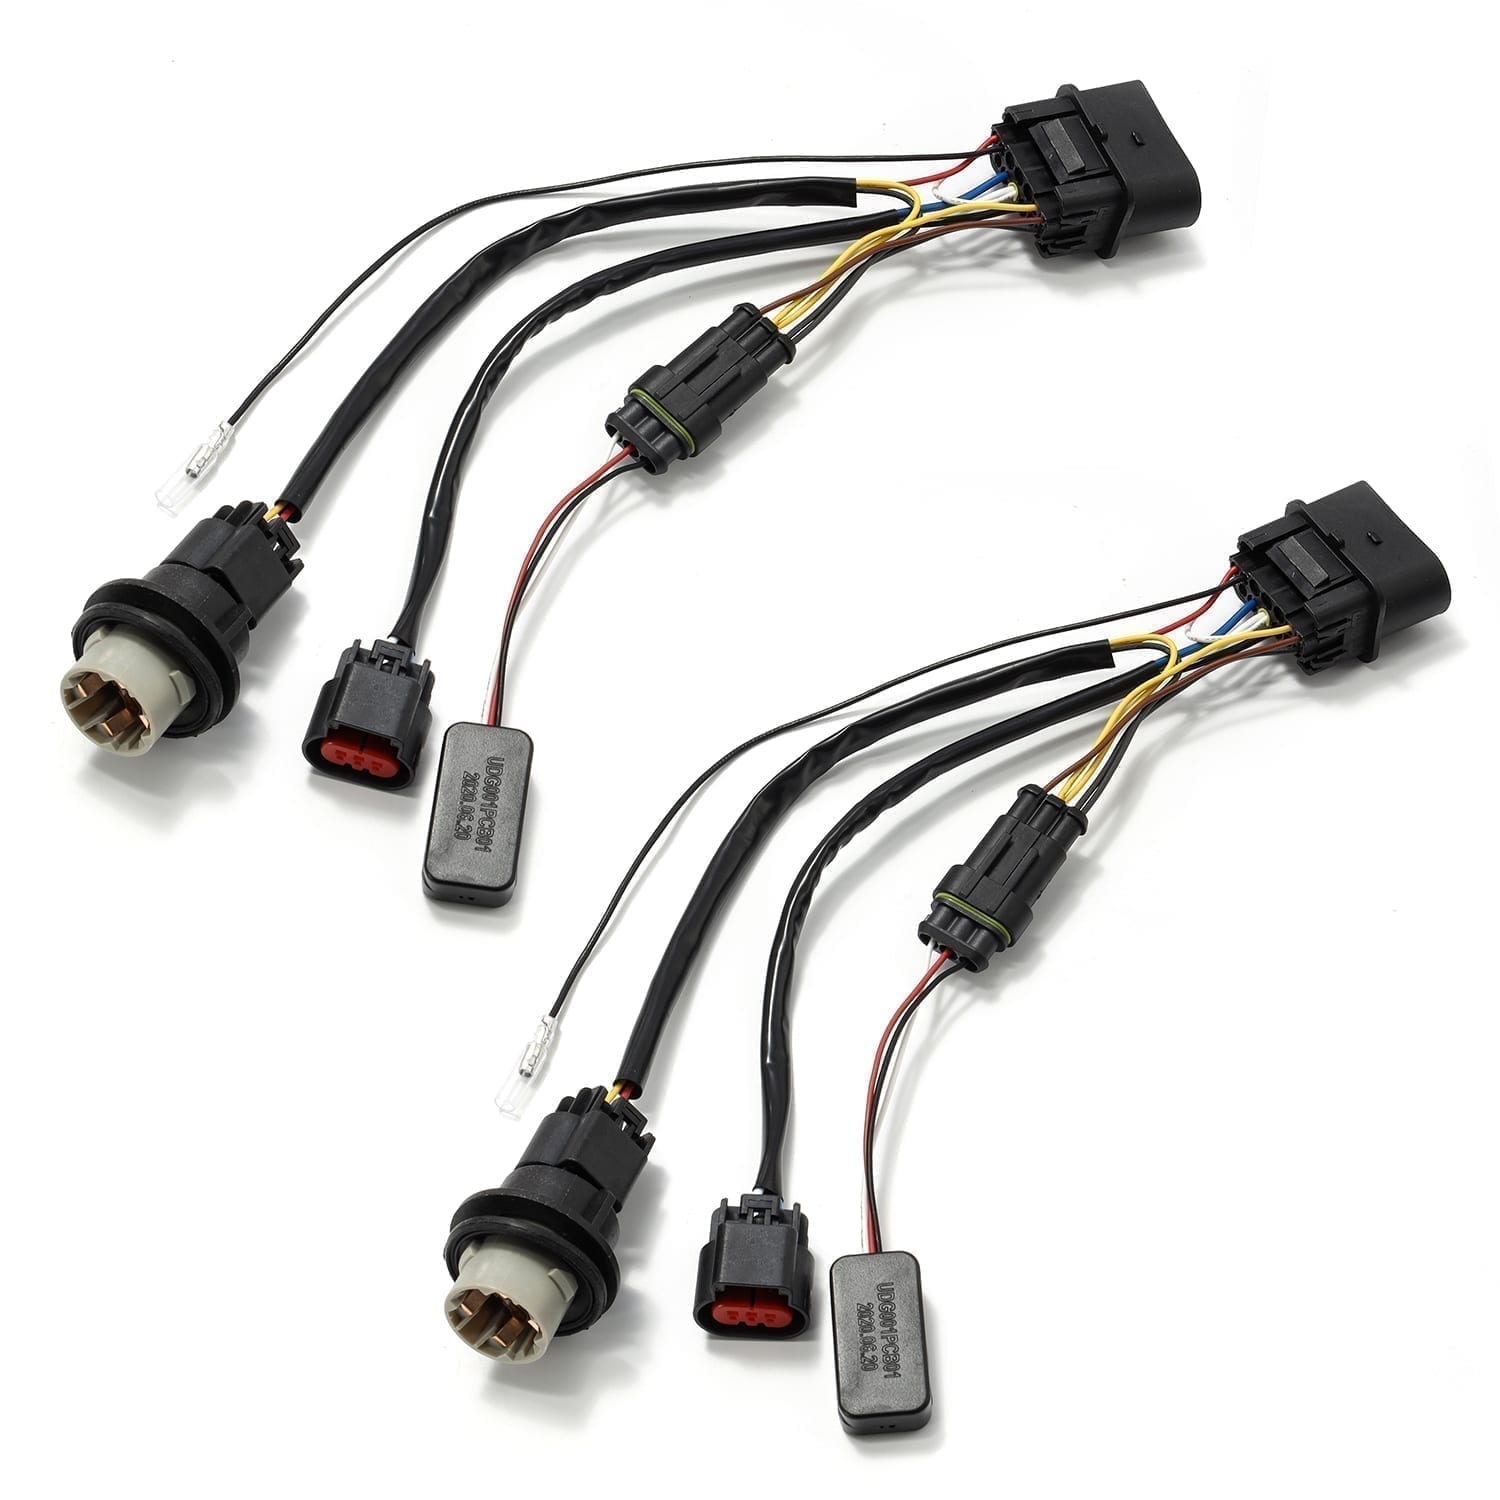 AlphaRex 810003 Trailer Wiring Adapter Connector